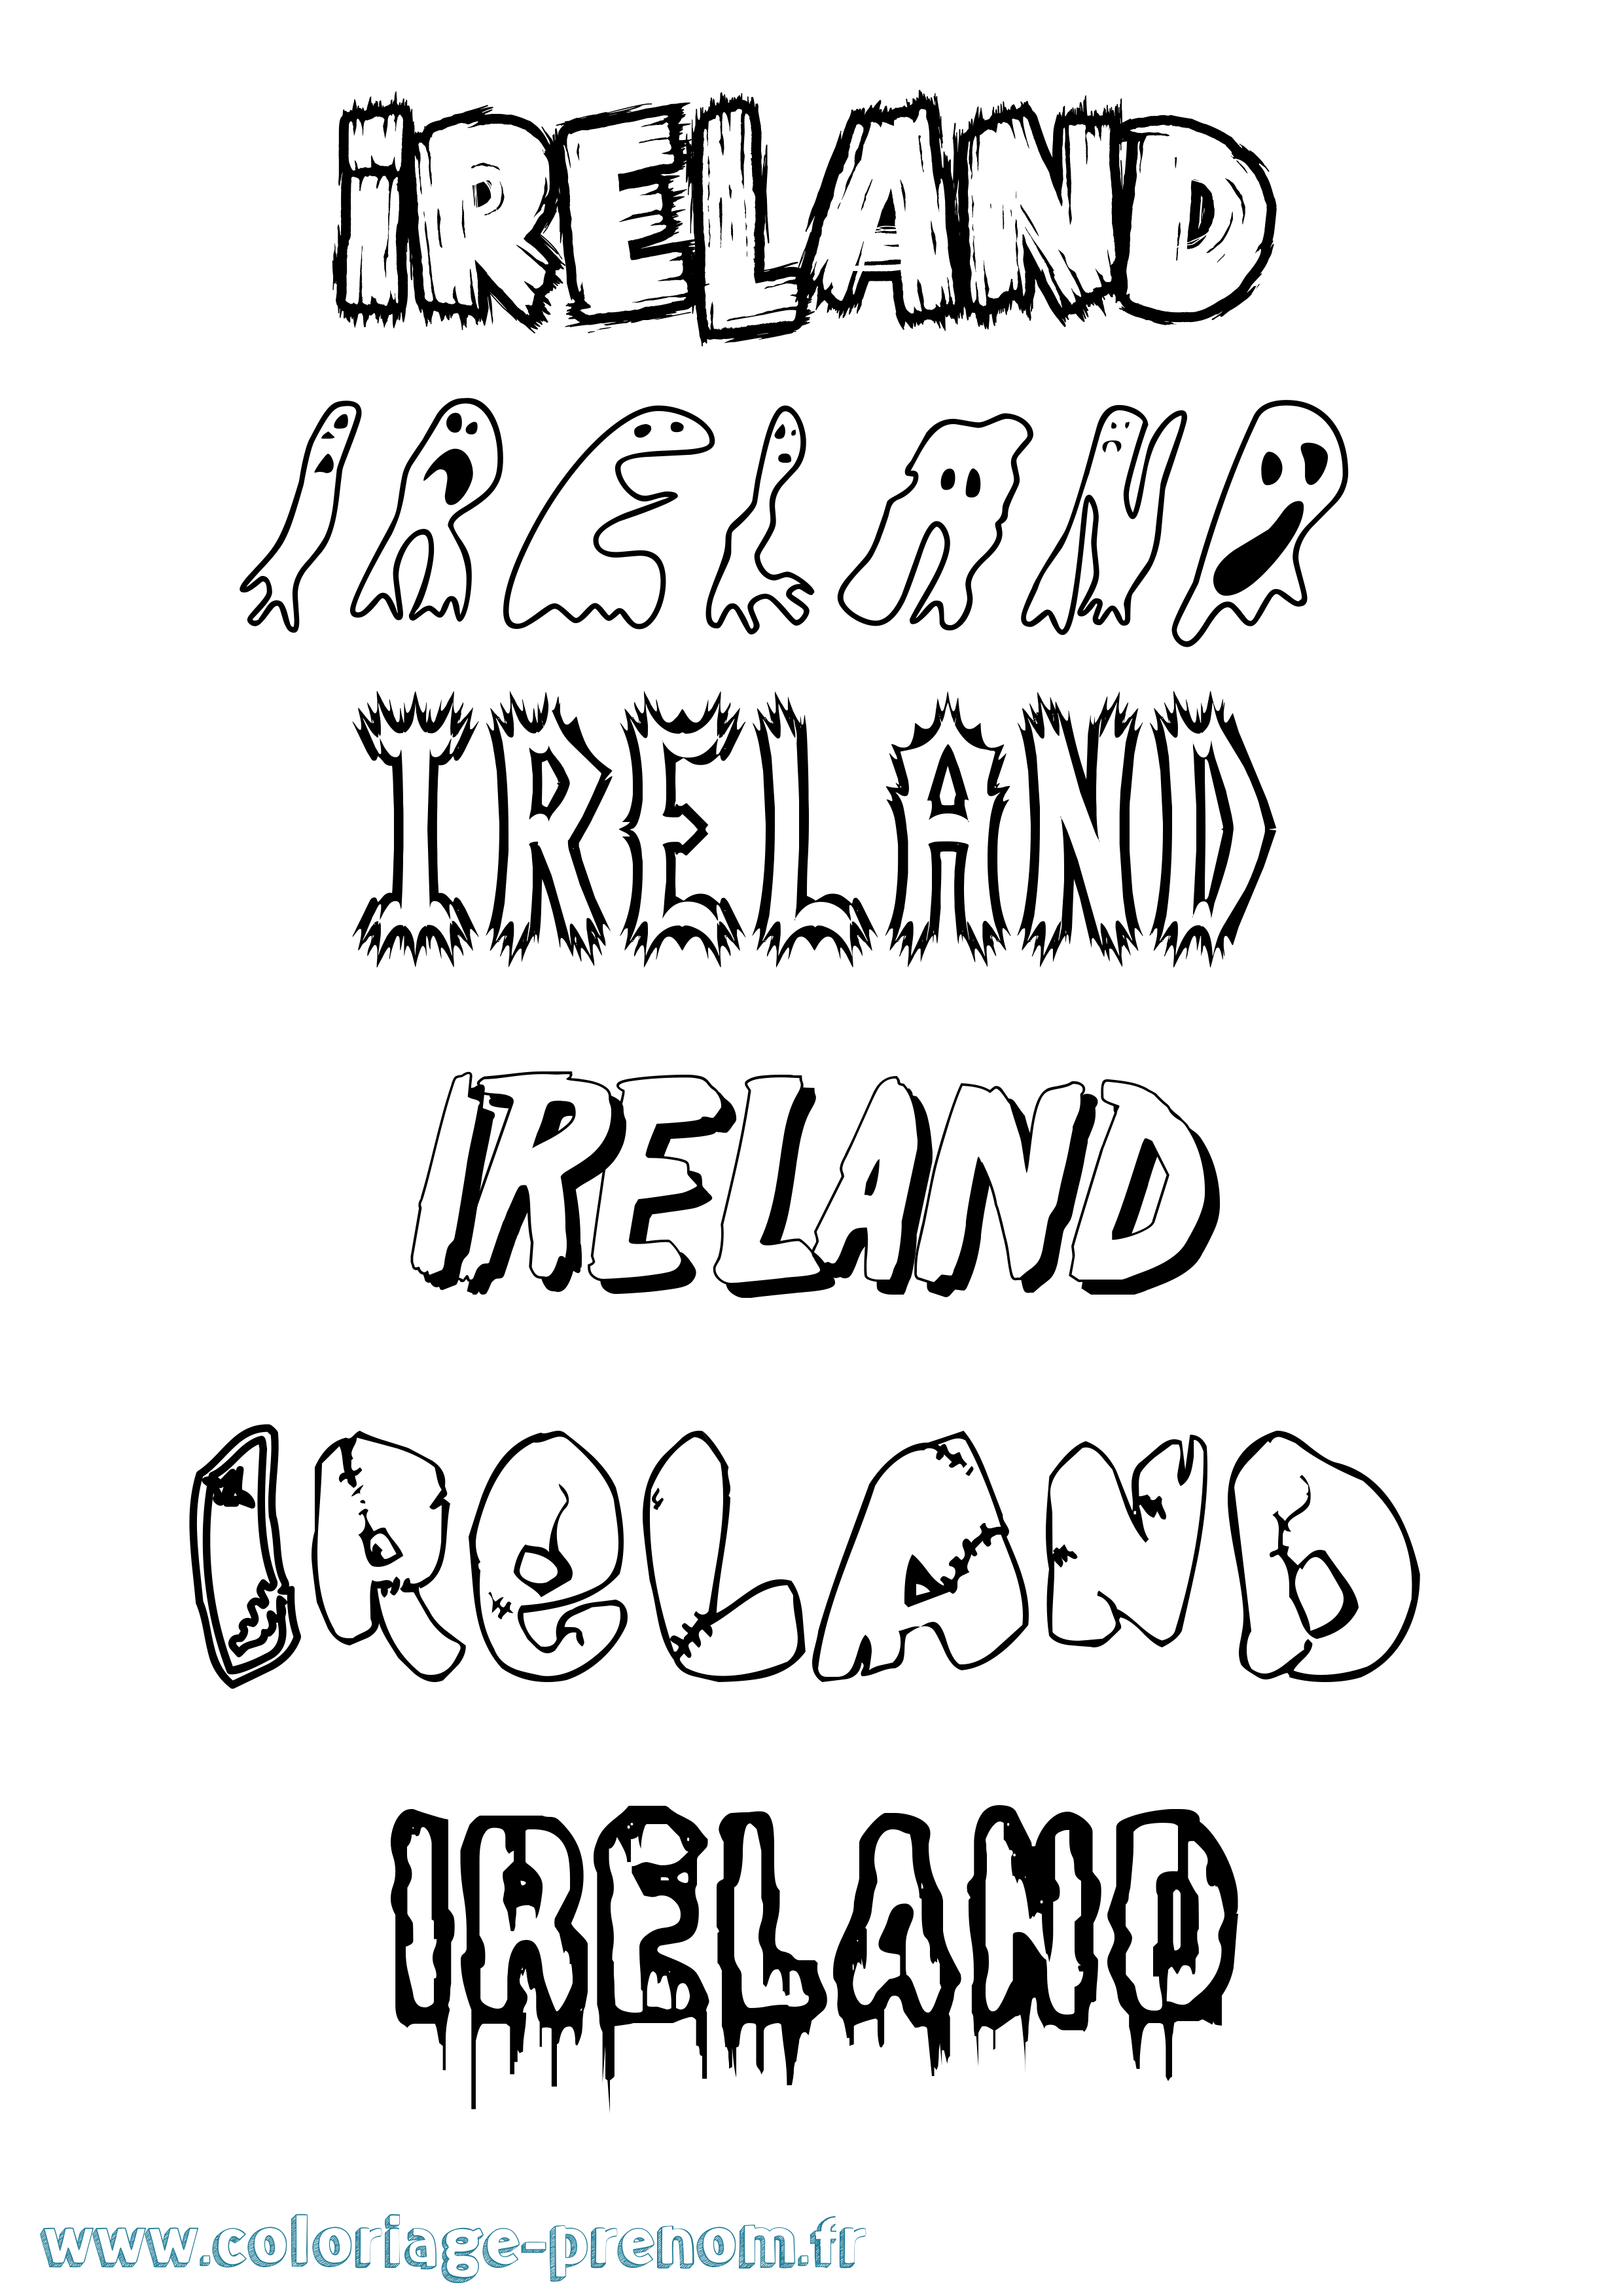 Coloriage prénom Ireland Frisson